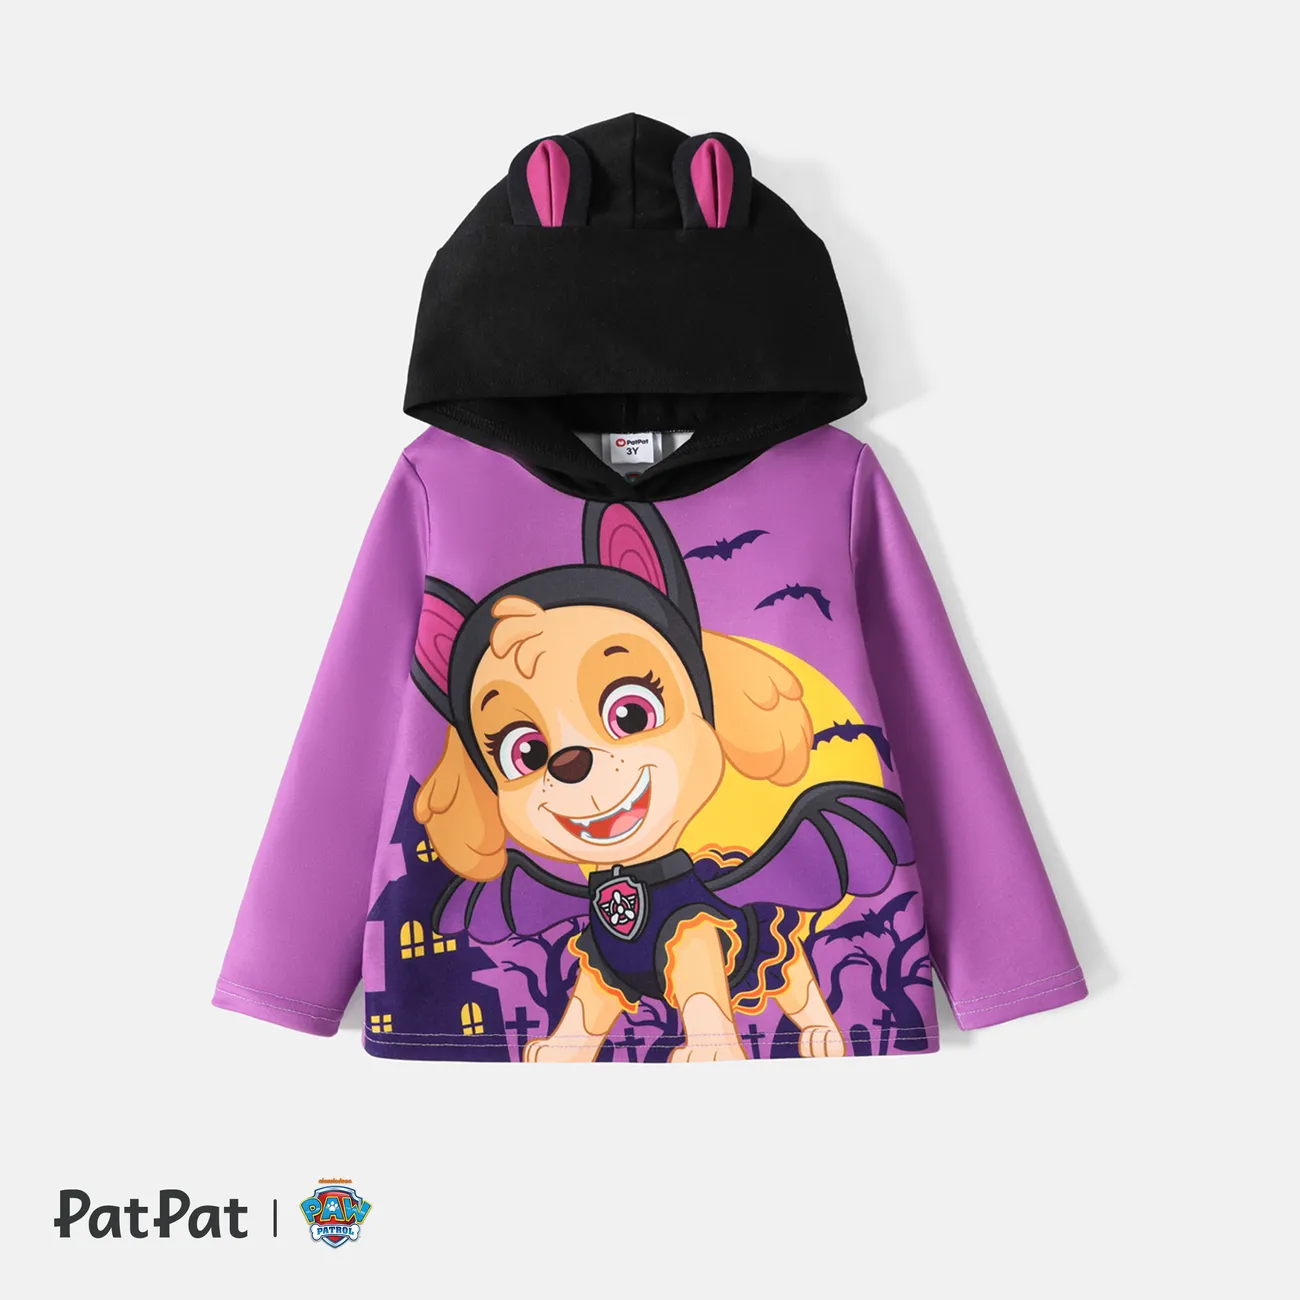 Patrulha Canina Dia das Bruxas Criança Menina Hipertátil/3D Infantil Cão Sweatshirt Roxa big image 1